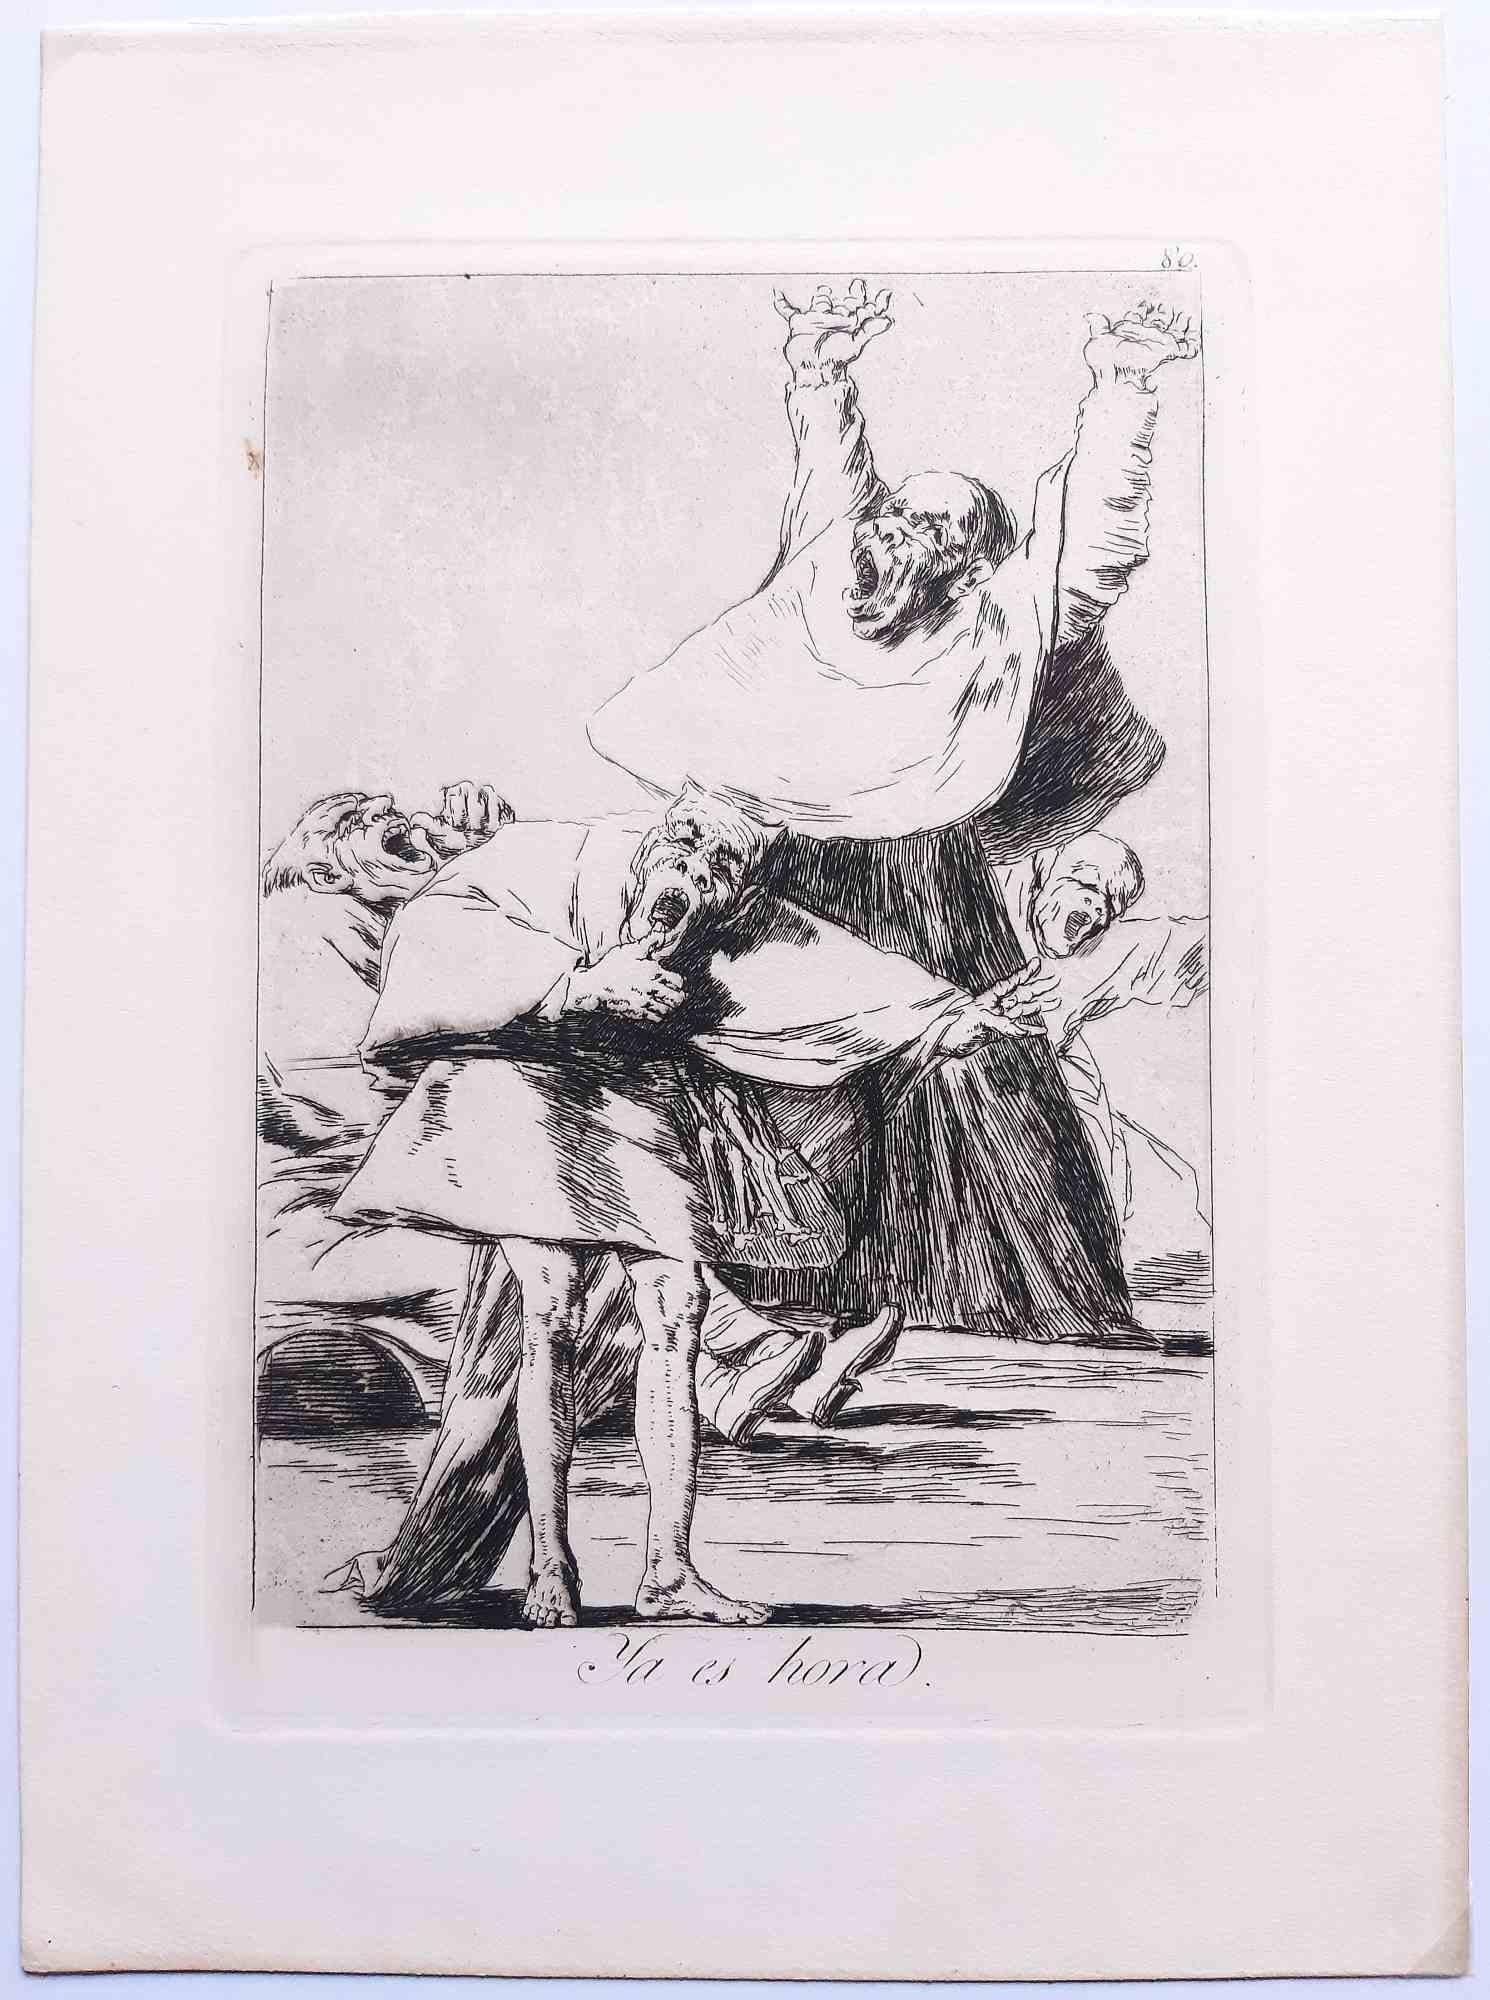 Ya es hora de Los Caprichos est une œuvre d'art originale réalisée par l'artiste Francisco Goya et publiée pour la première fois en 1799.

Eau-forte et aquatinte sur papier.

Cette gravure fait partie de la quatrième édition de "Los Caprichos"